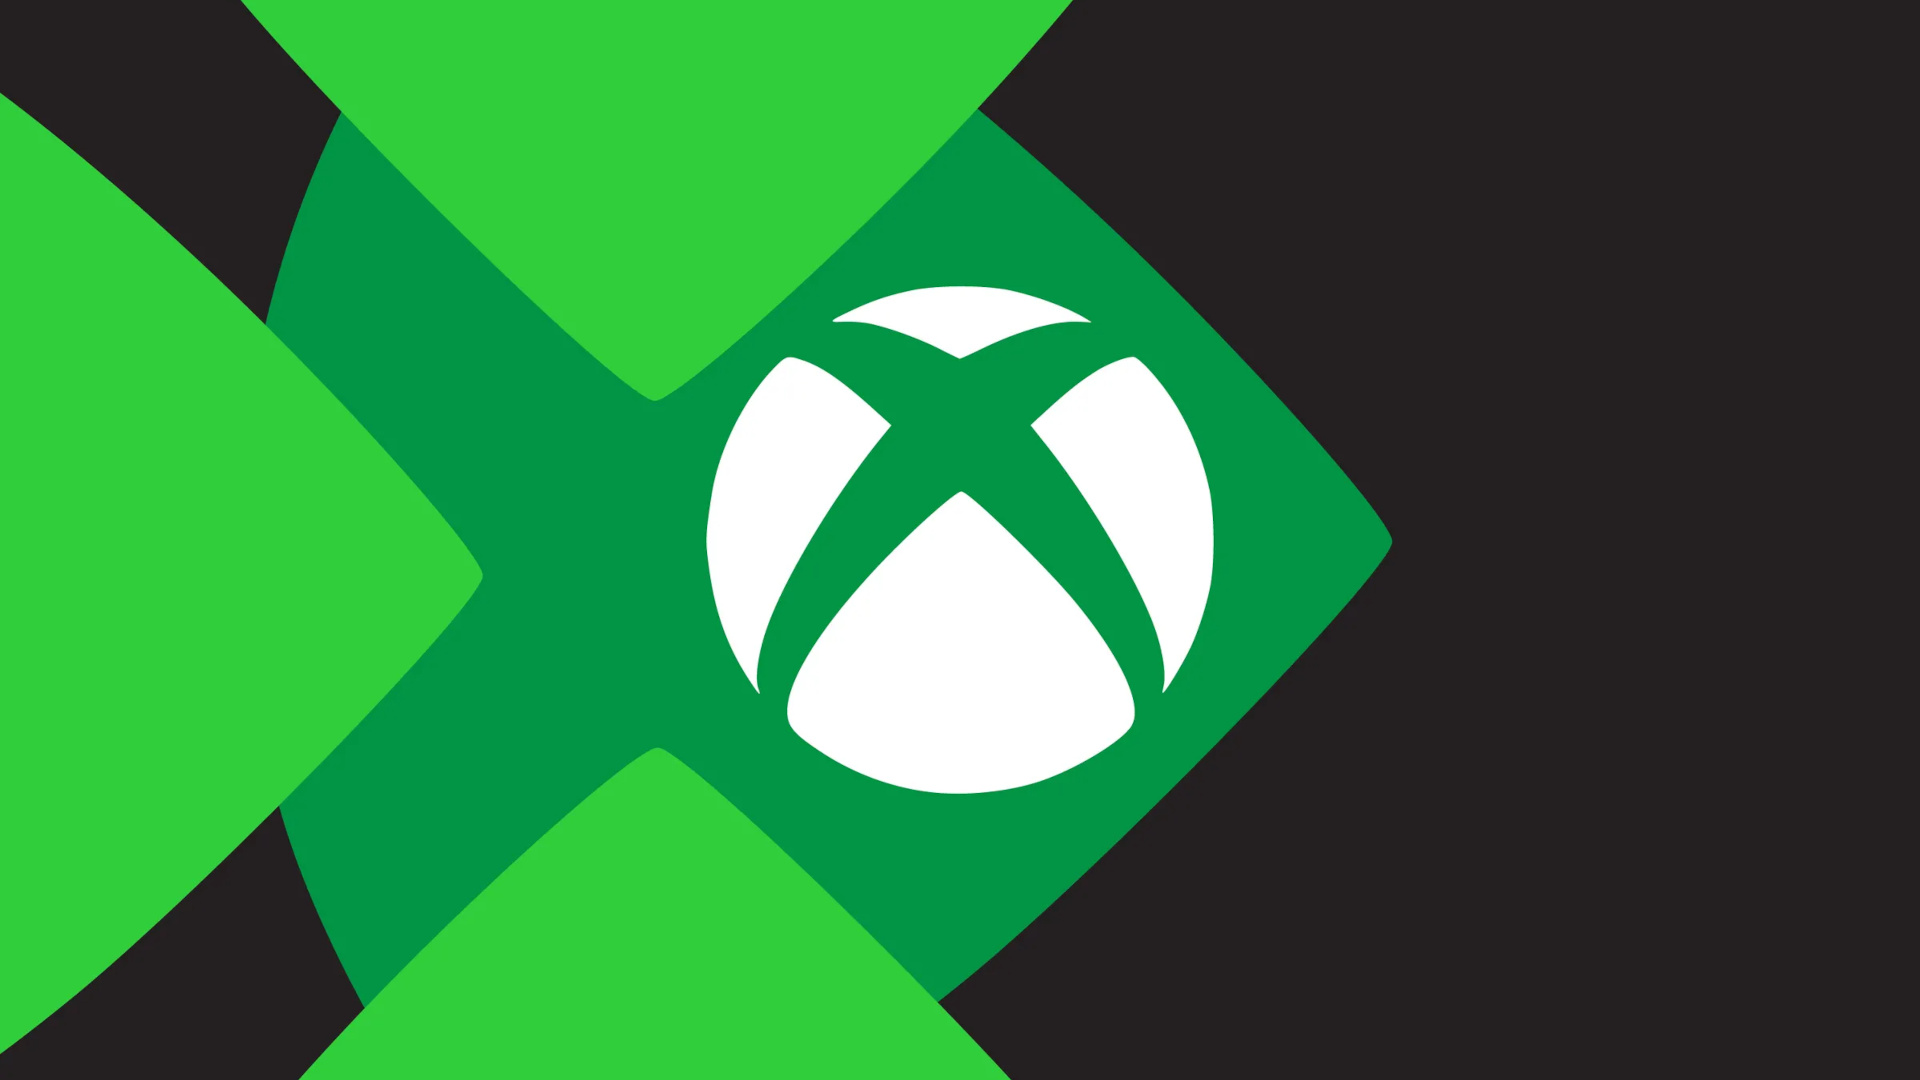 Προβληματισμένοι ορισμένοι third-party publishers με την πορεία των Xbox Series X|S